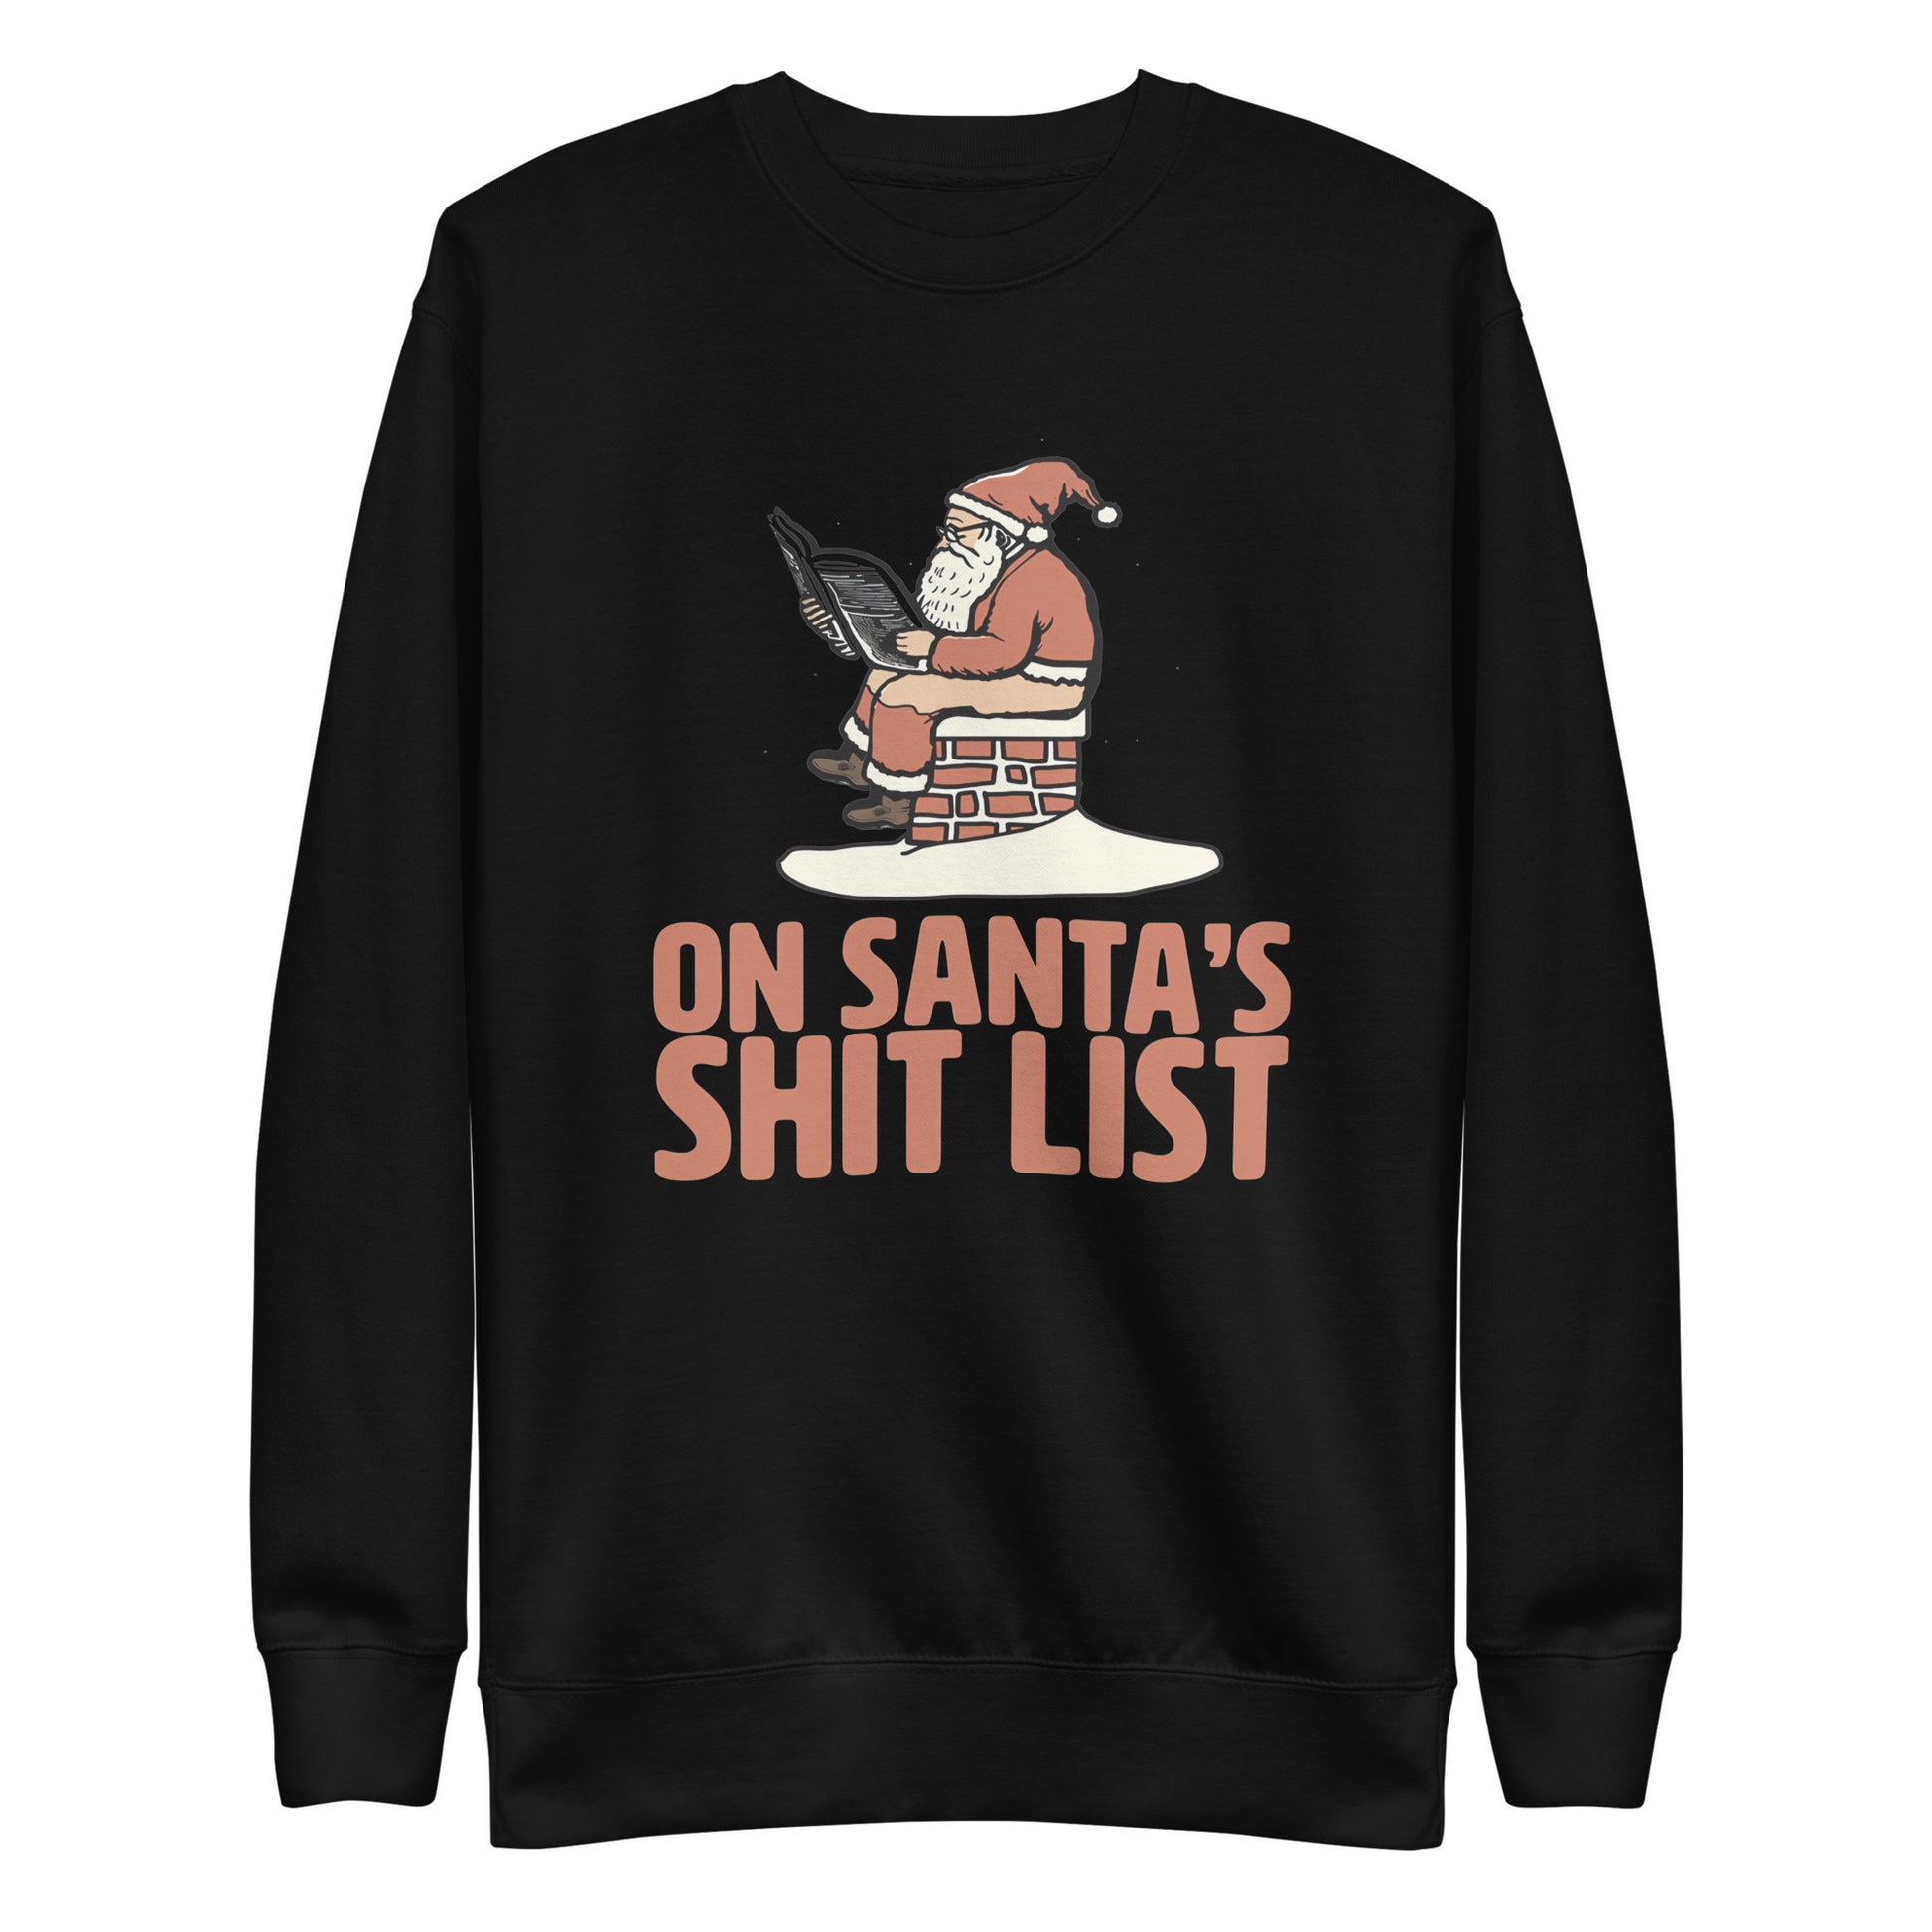 Suéter En la lista de Santa, Disponible en la mejor tienda online para comprar tu merch favorita, la mejor Calidad, compra Ahora en Superstar!